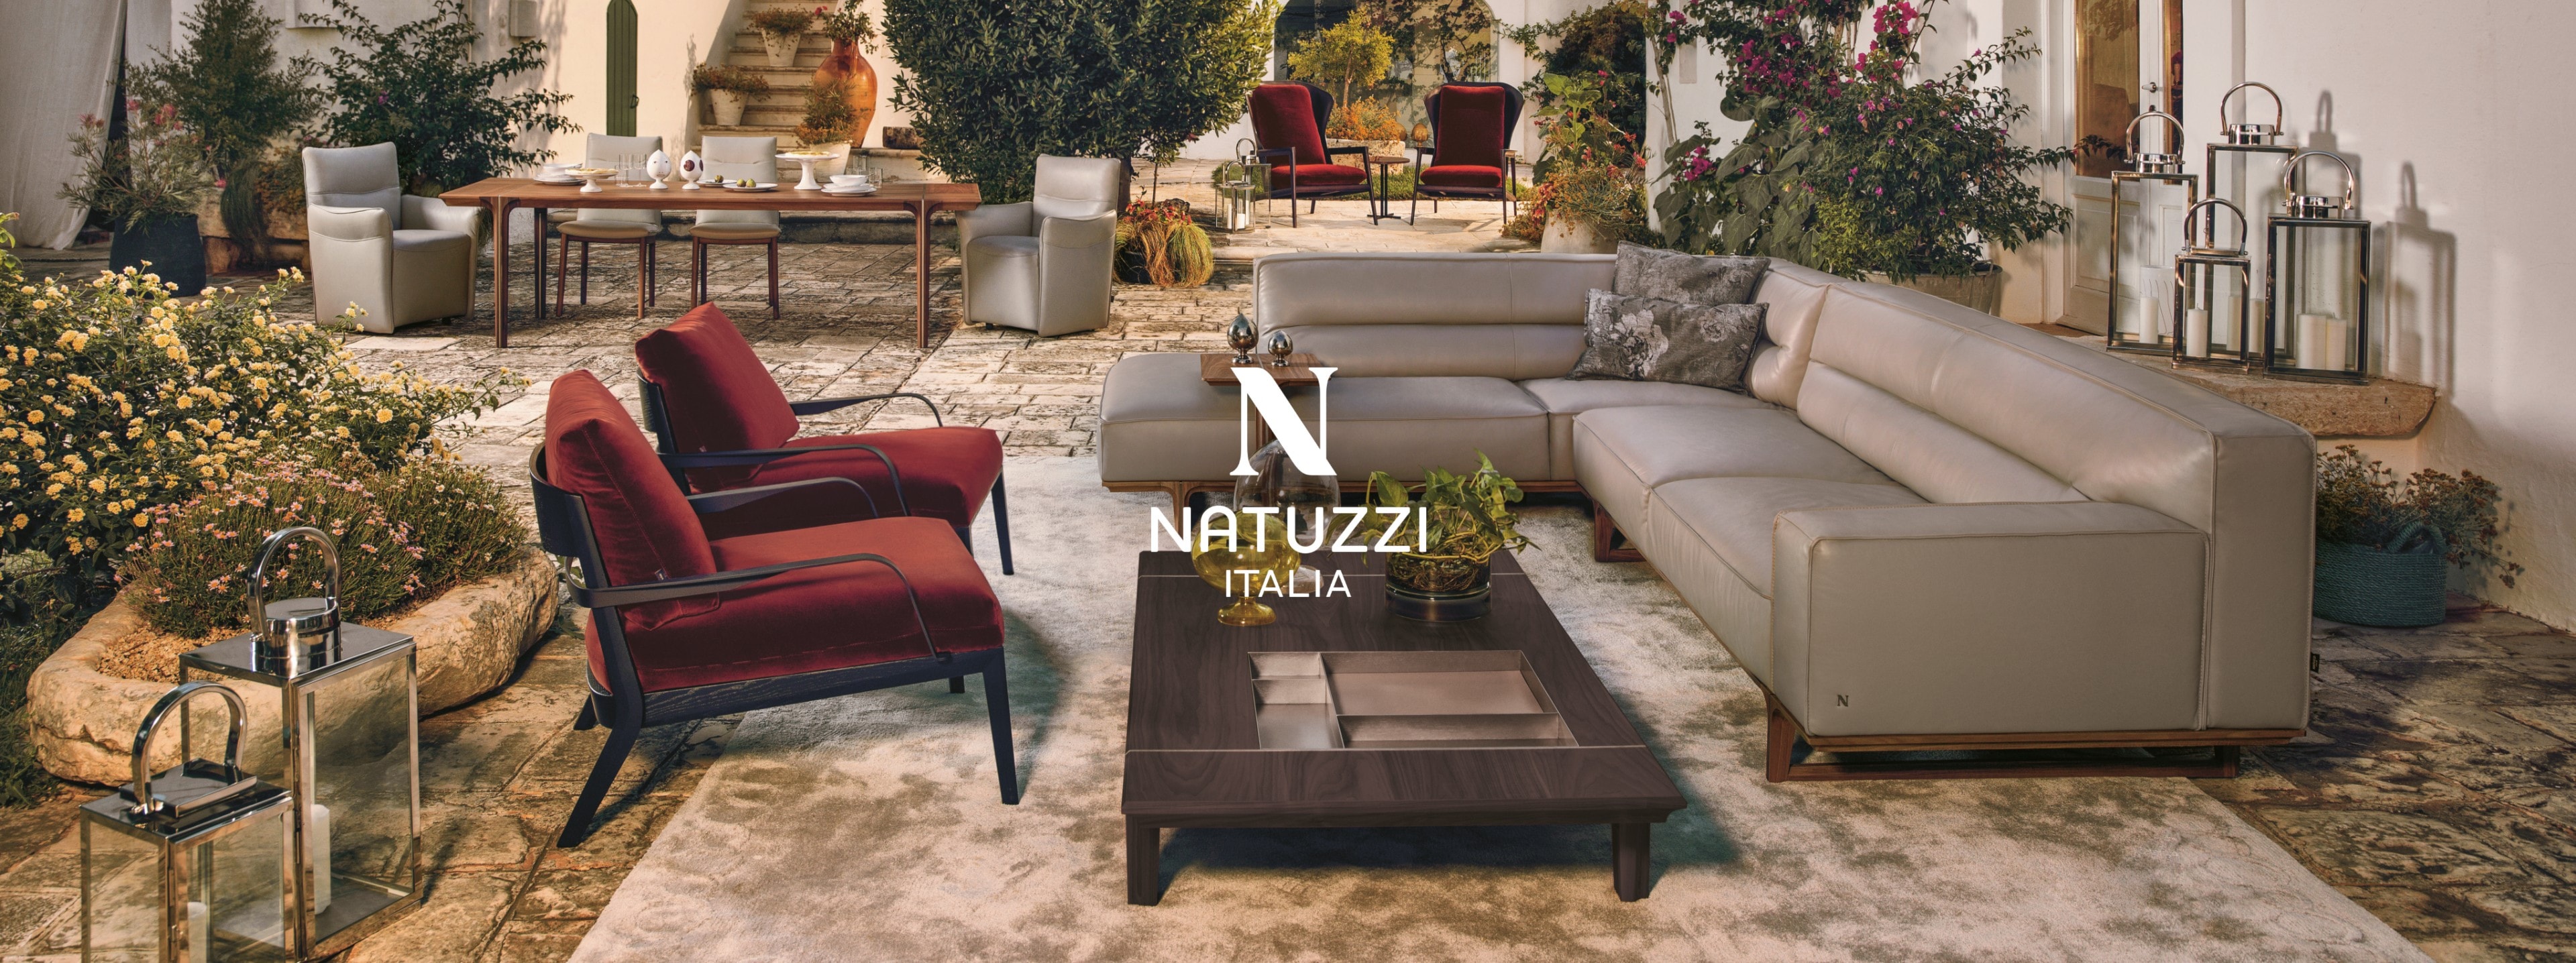 Natuzzi Italy